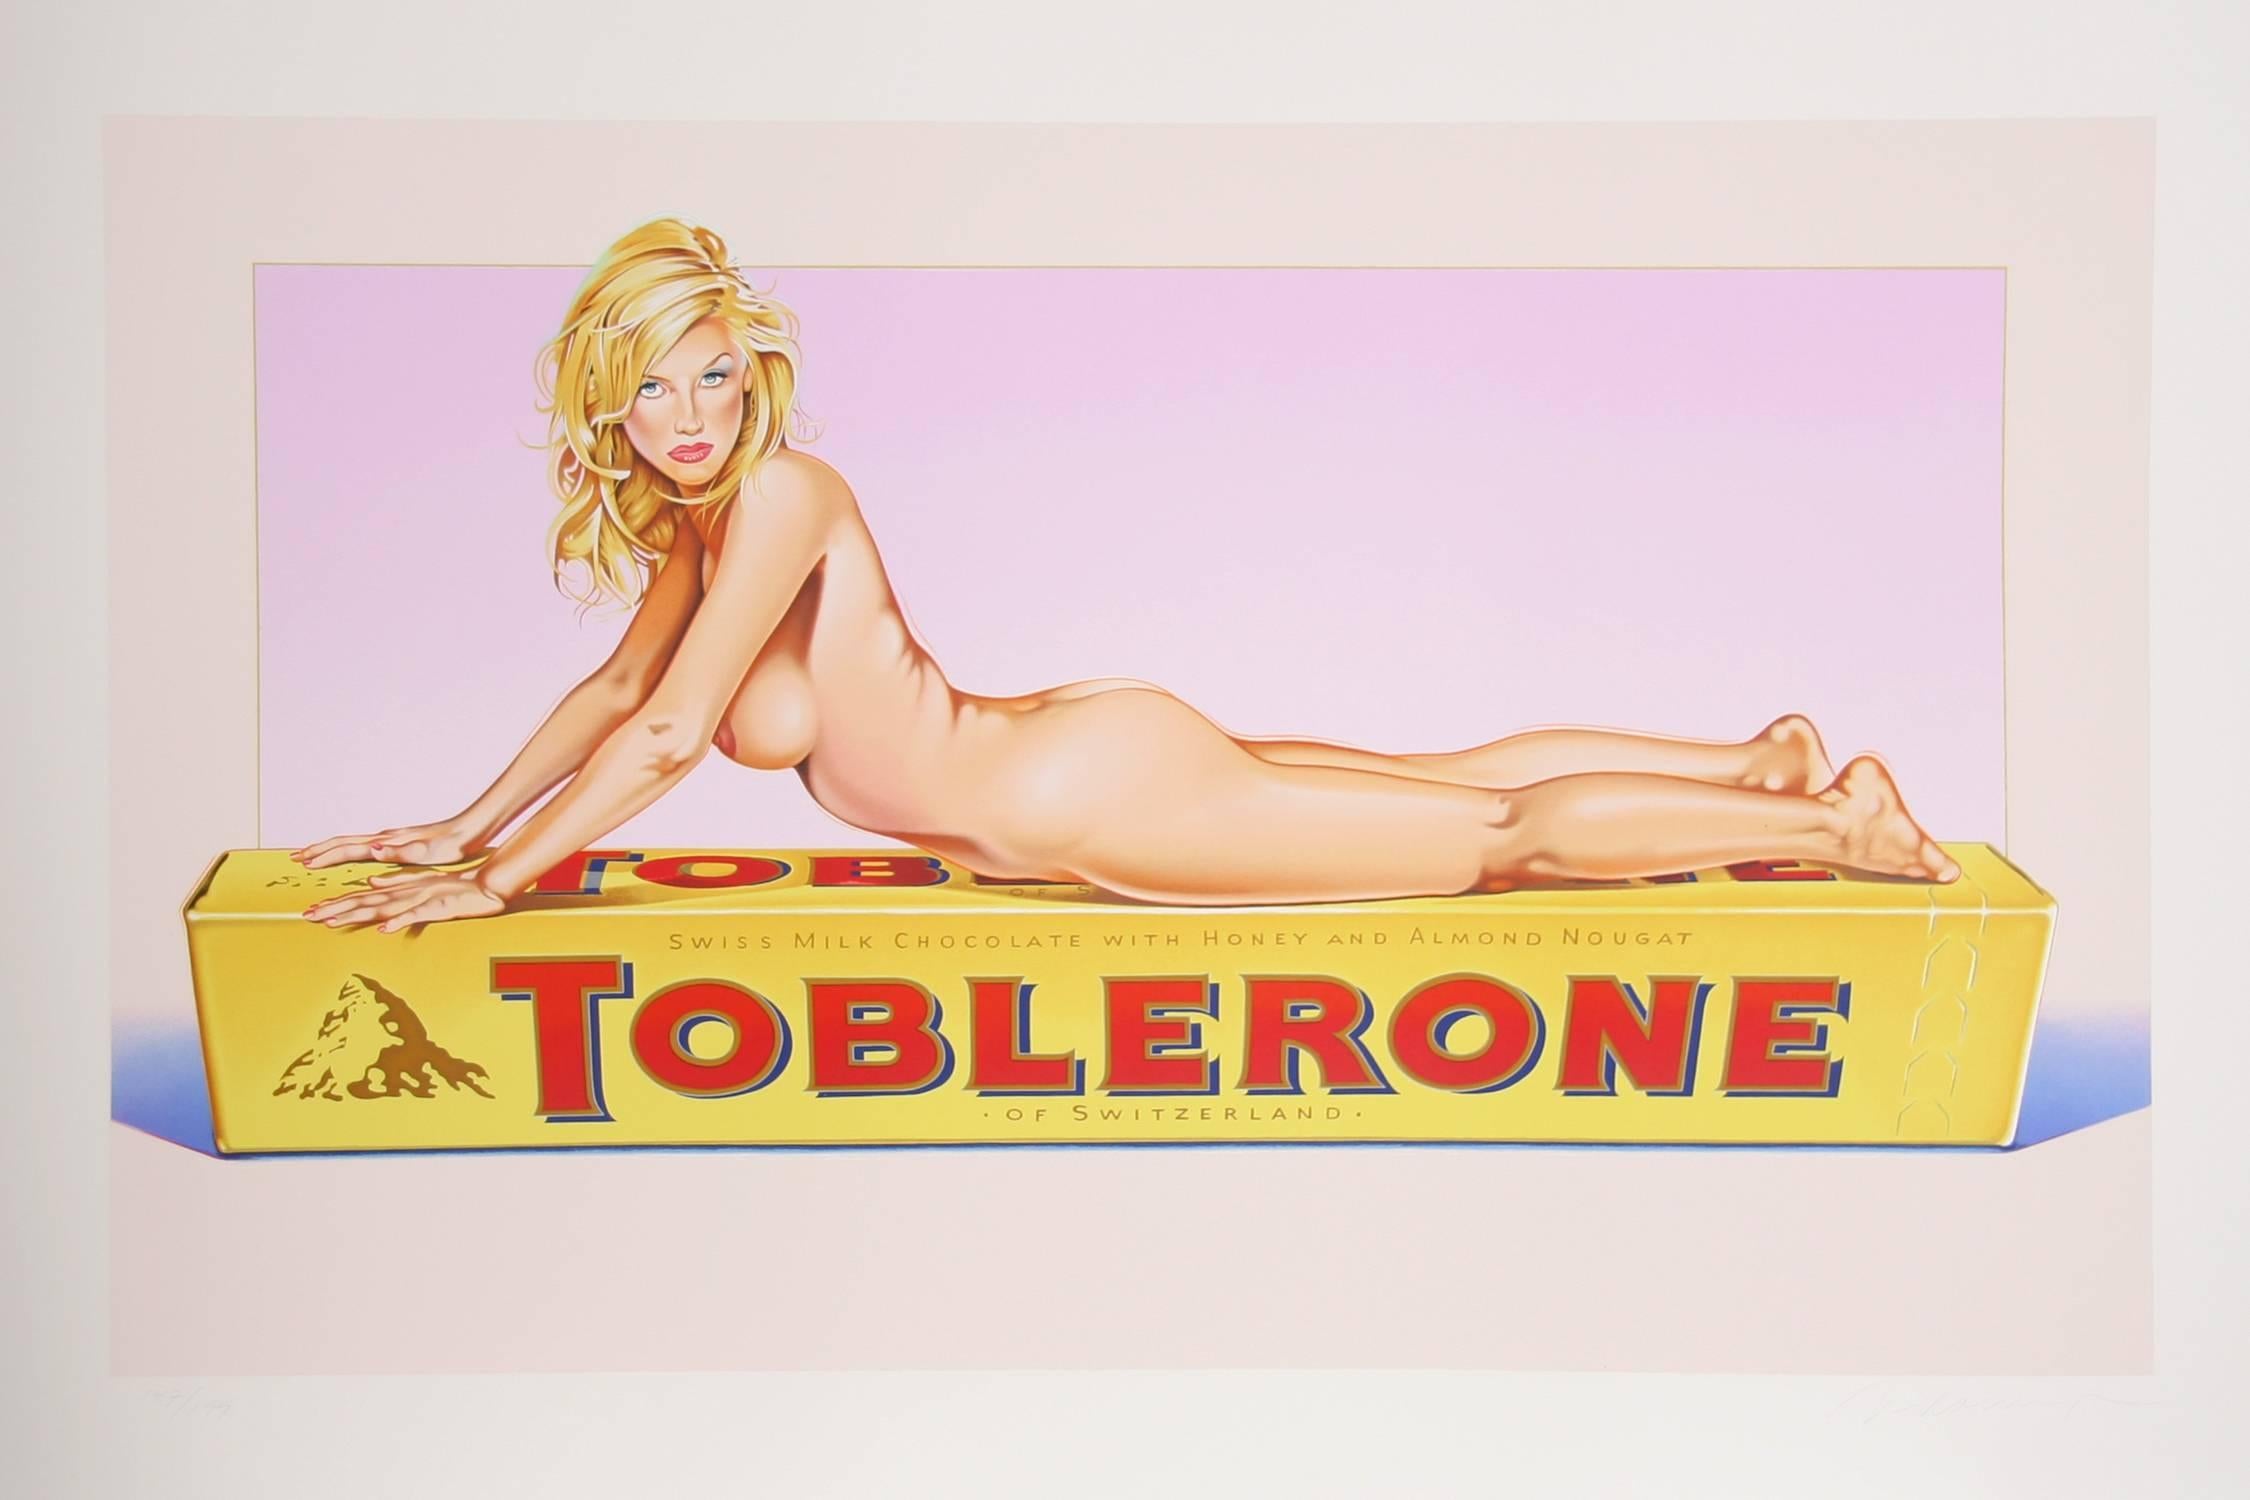 Künstler: Mel Ramos (Amerikaner, geb. 1935)
Titel: Toblerone Tess
Jahr: 2007
Medium: Lithographie, mit Bleistift signiert und nummeriert
Auflage: 199
Größe: 30 Zoll x 44,5 Zoll (76,2 cm x 113,03 cm)